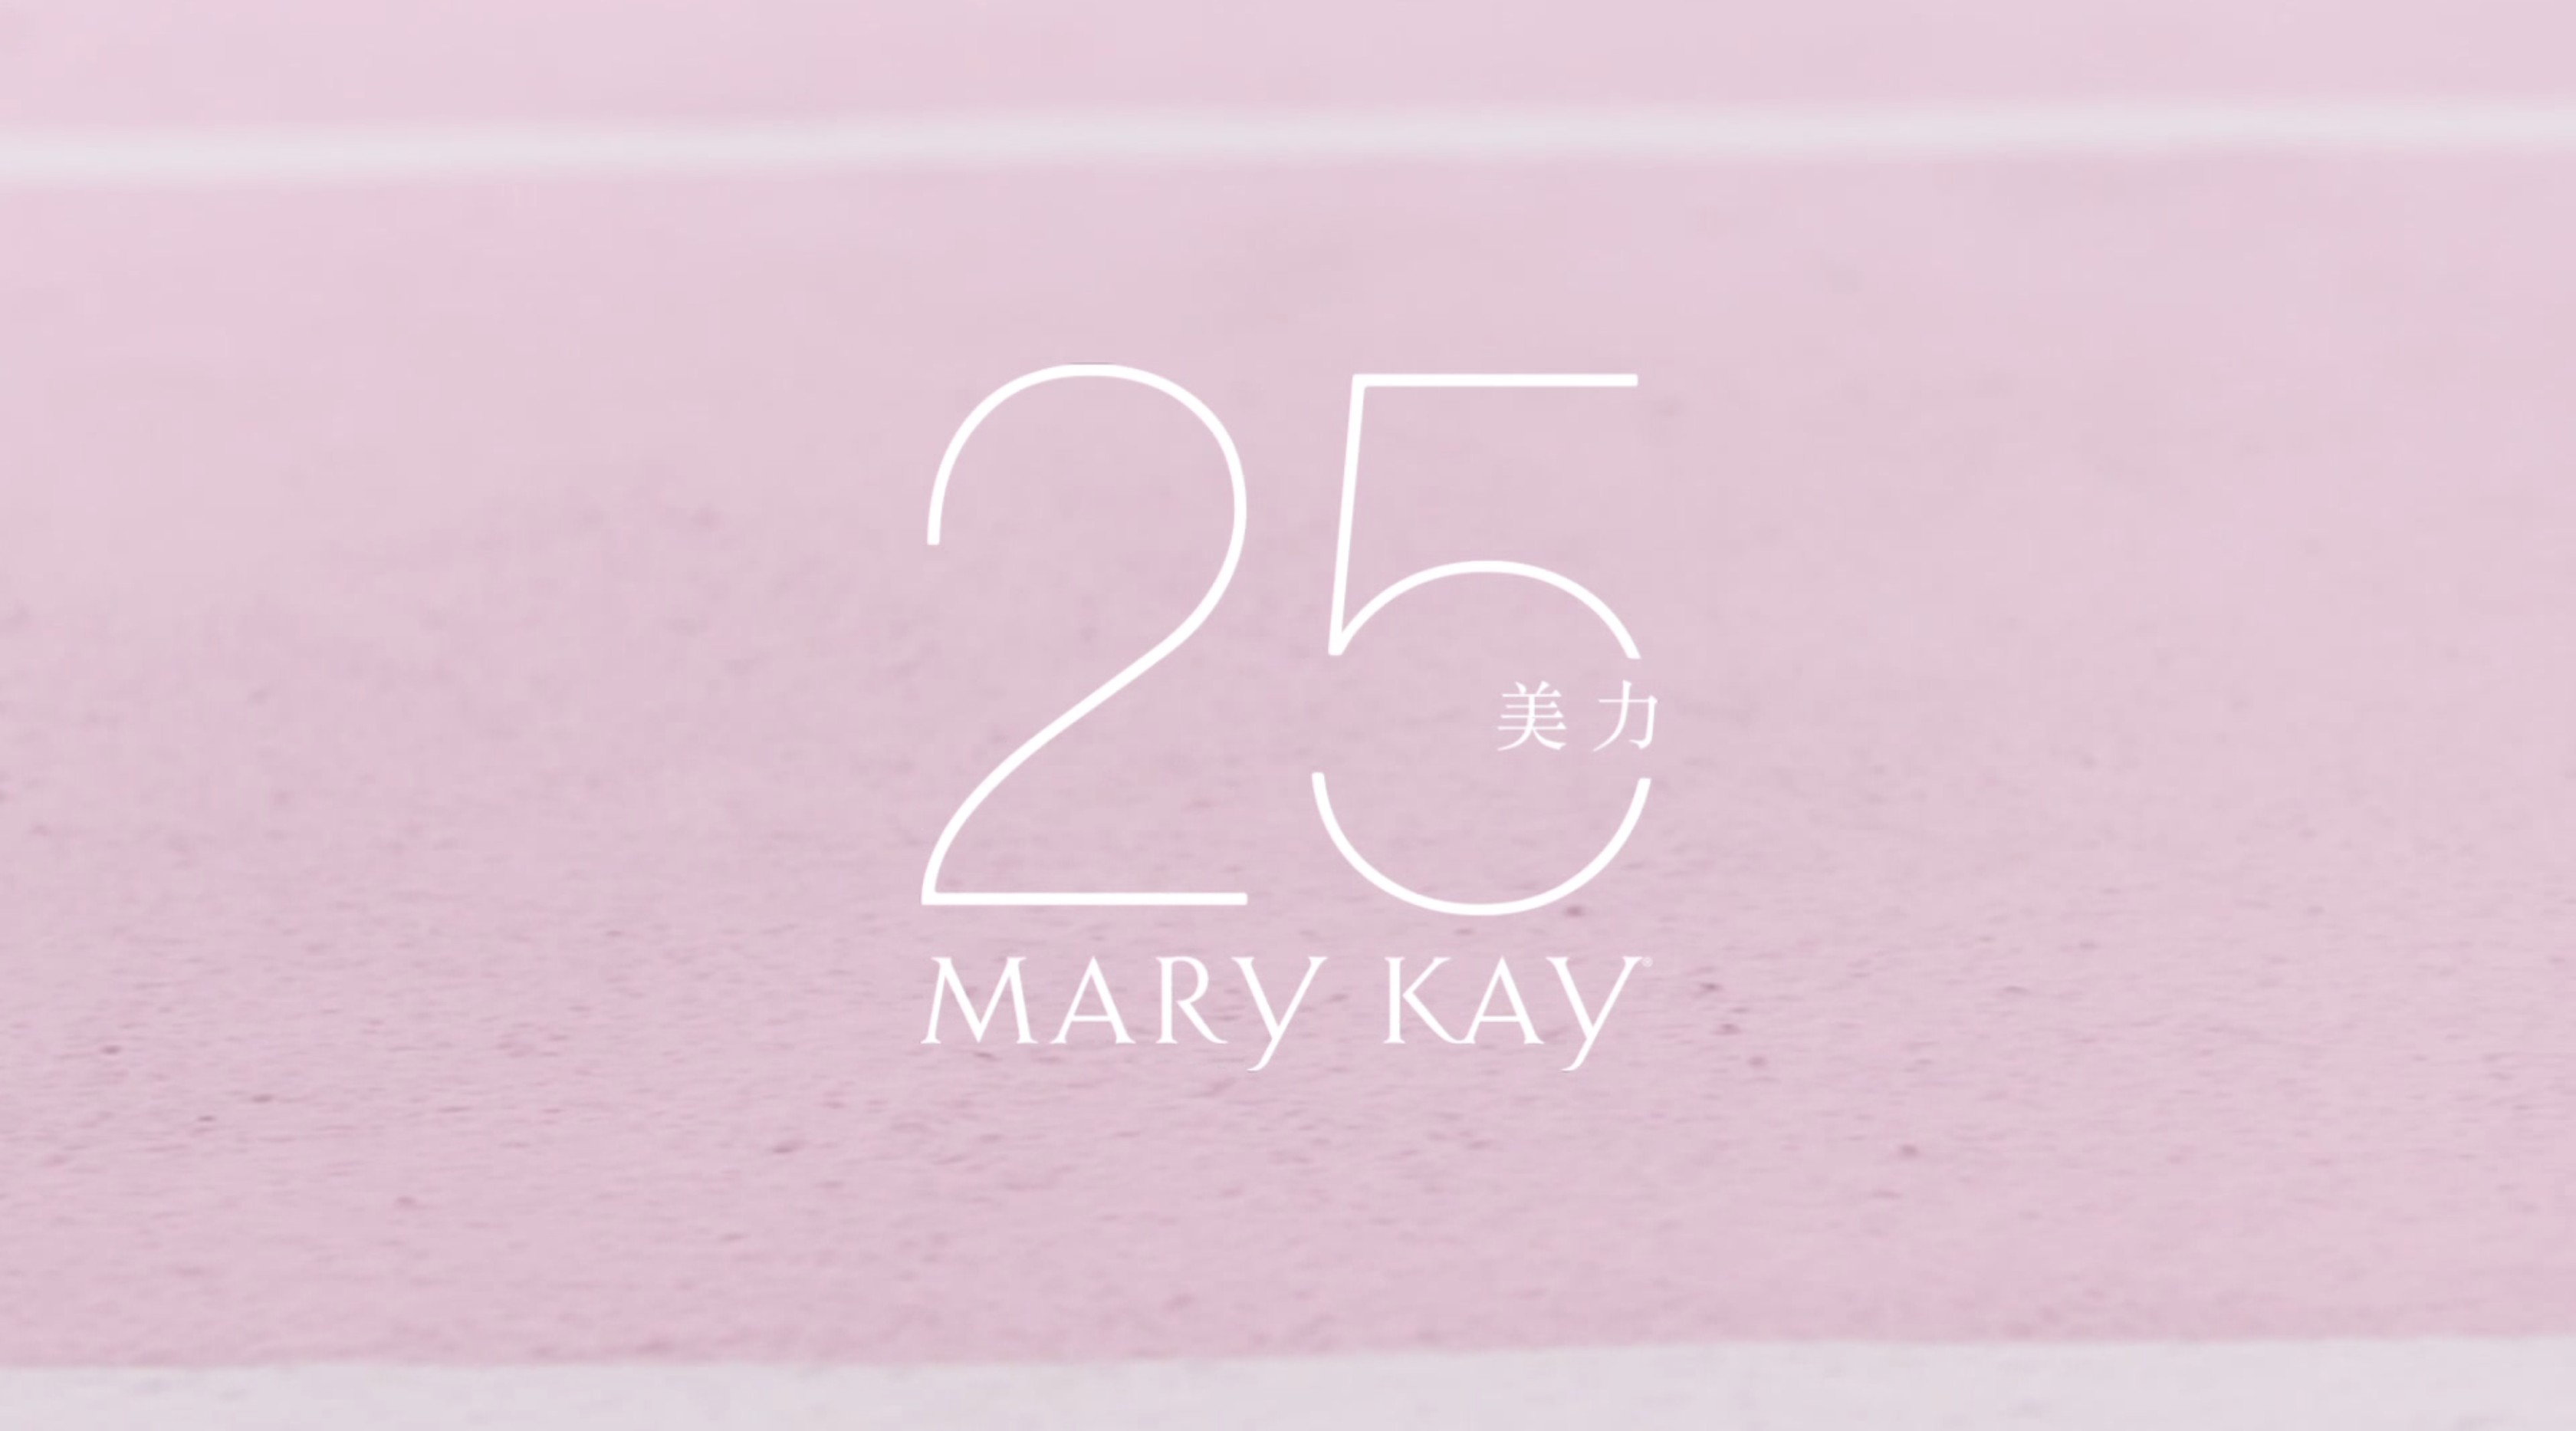 Mary Kay 美力·25 #美力势不可挡# 